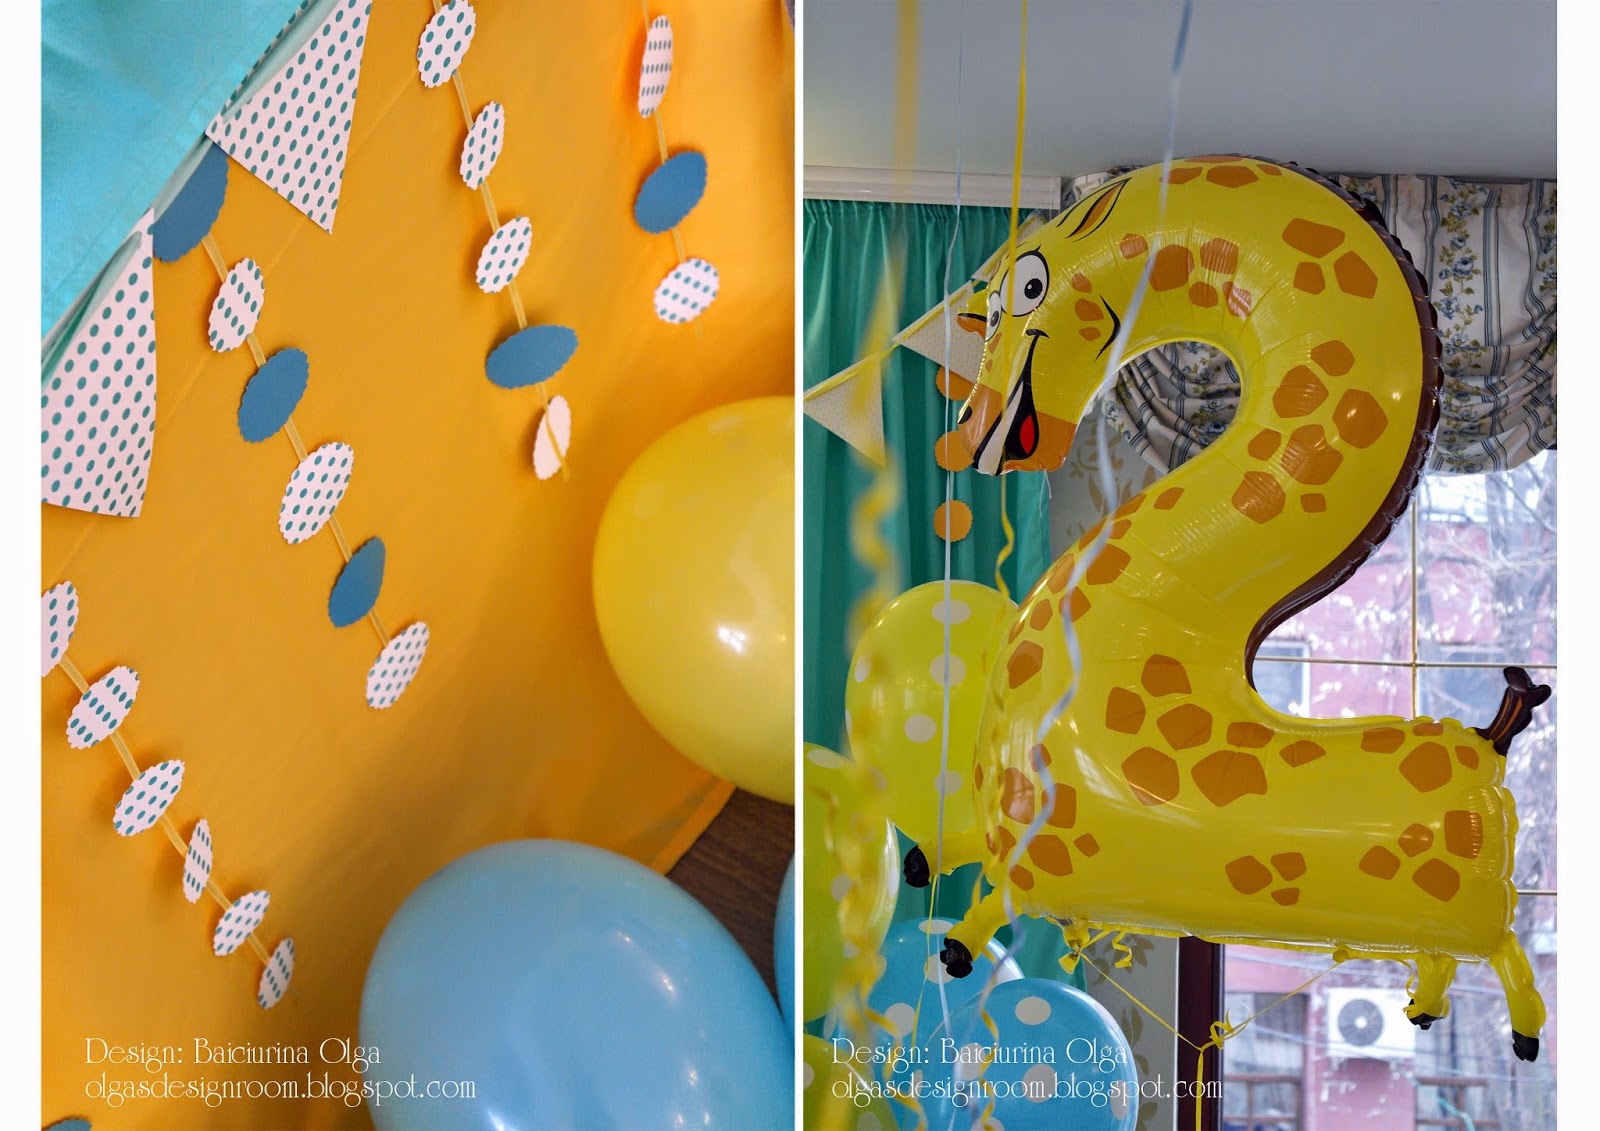 Ольга Байчурина: Оформление детского дня рождения на тему "Жирафики" - Giraffe birthday party theme!